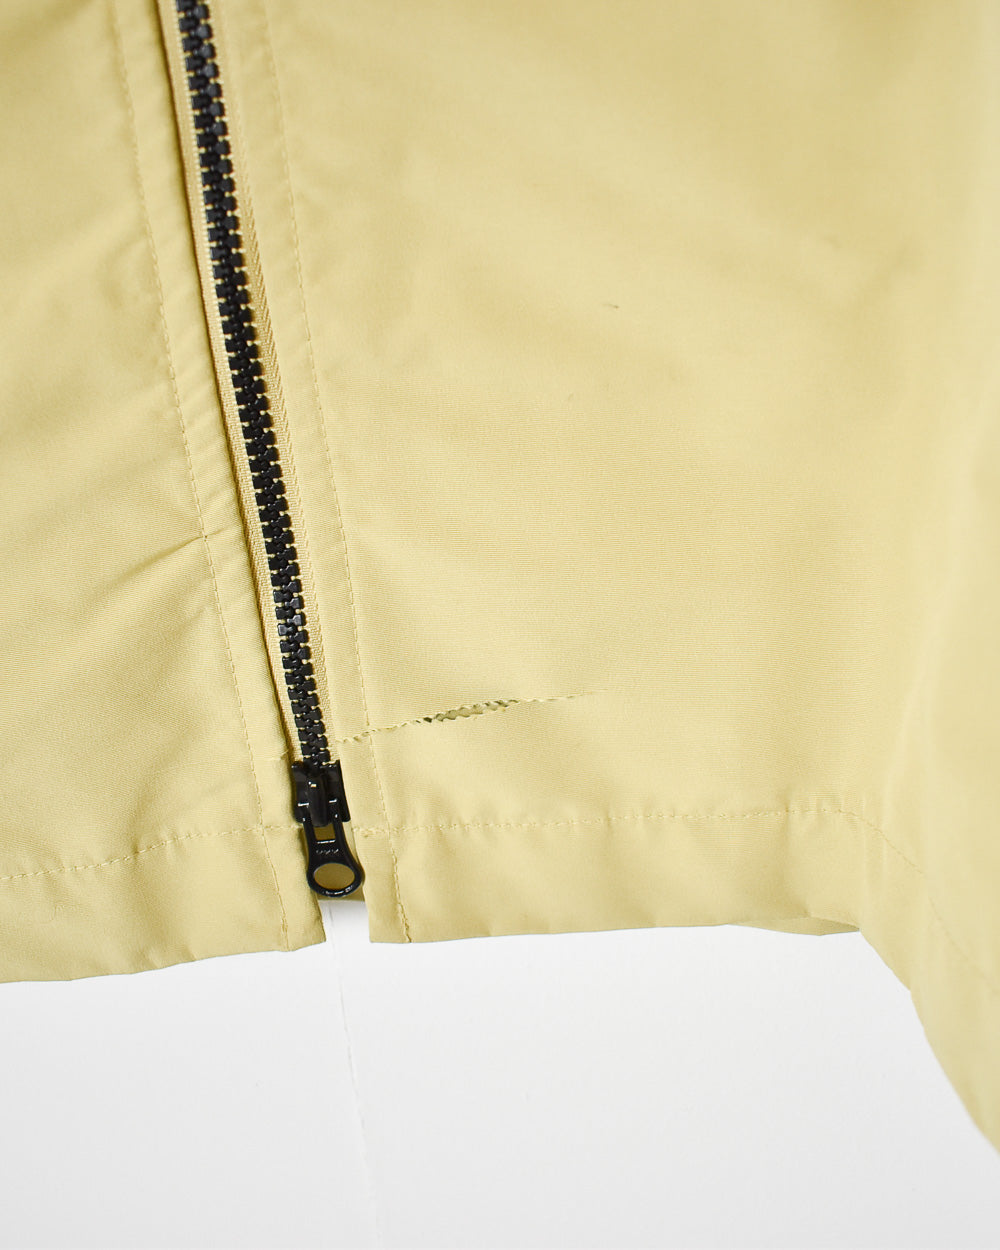 Yellow Nike Jacket - Large